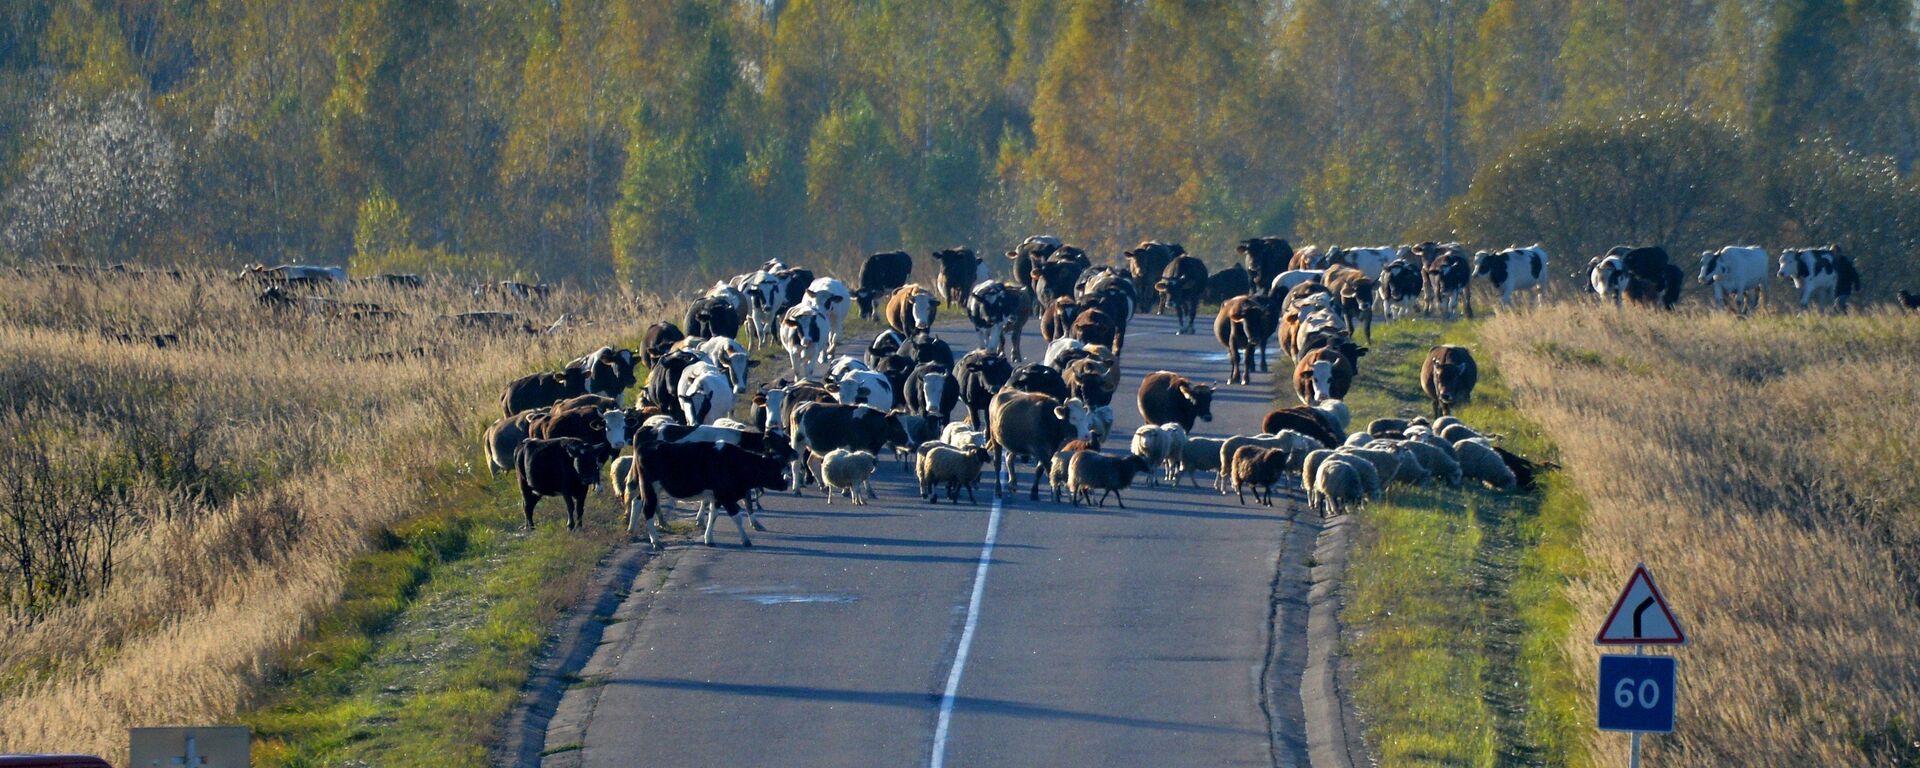 По нераспаханным полям пастухи гонят коров и овечек на зимовку - животные до весны на природу уже не выйдут - Sputnik Latvija, 1920, 02.07.2020